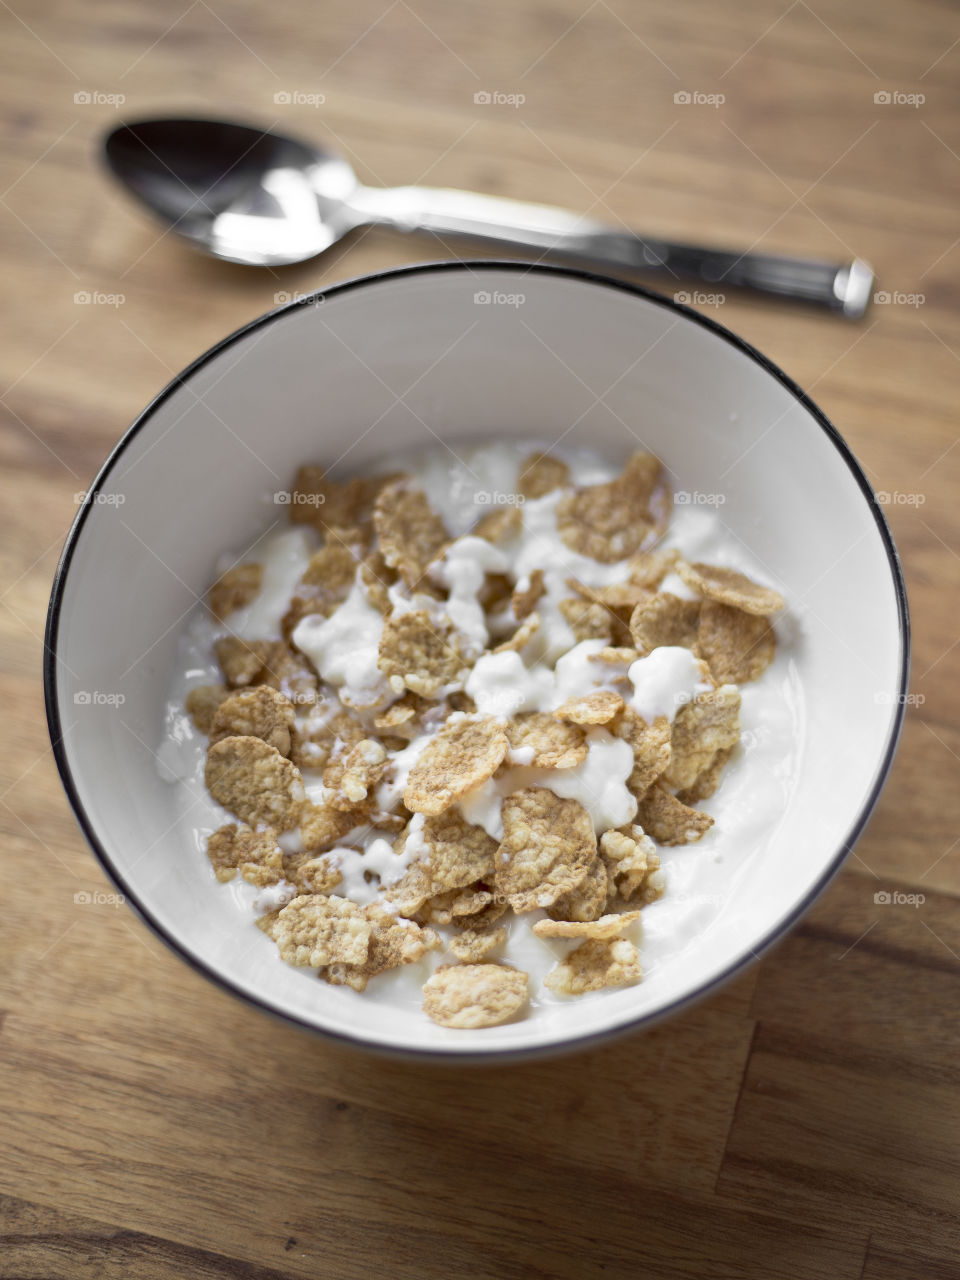 Healthy breakfast cereals and yogurt